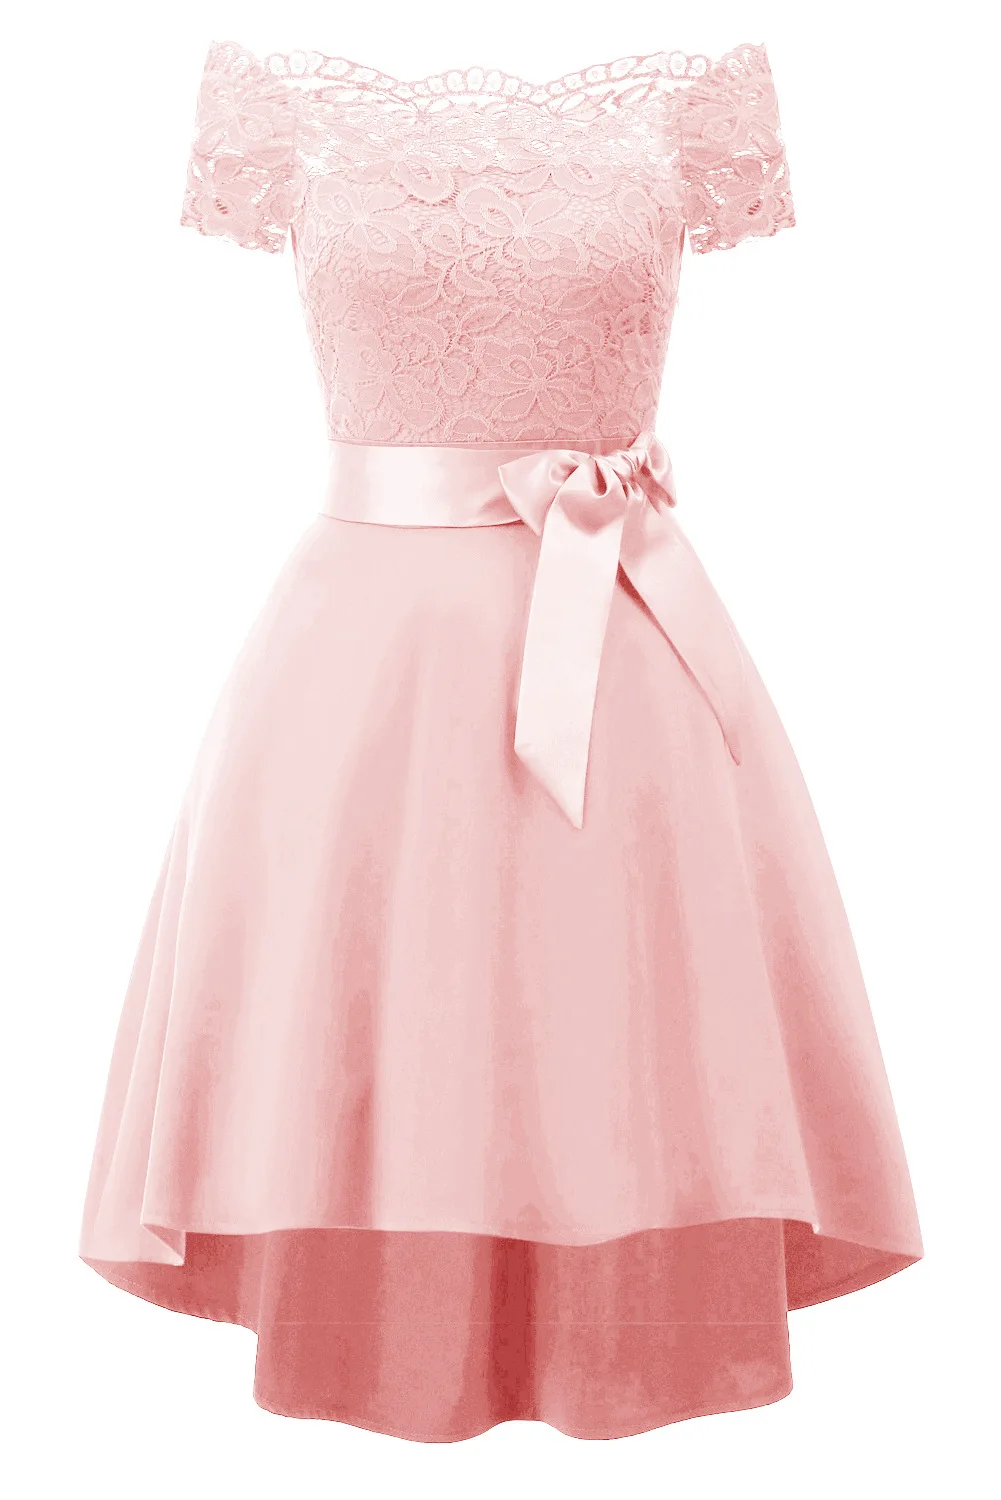 Женское черное классическое кружевное платье без бретелек с поясом, вечерние платья с открытыми плечами в стиле ретро, летние платья для танцев, Новинка - Цвет: Розовый